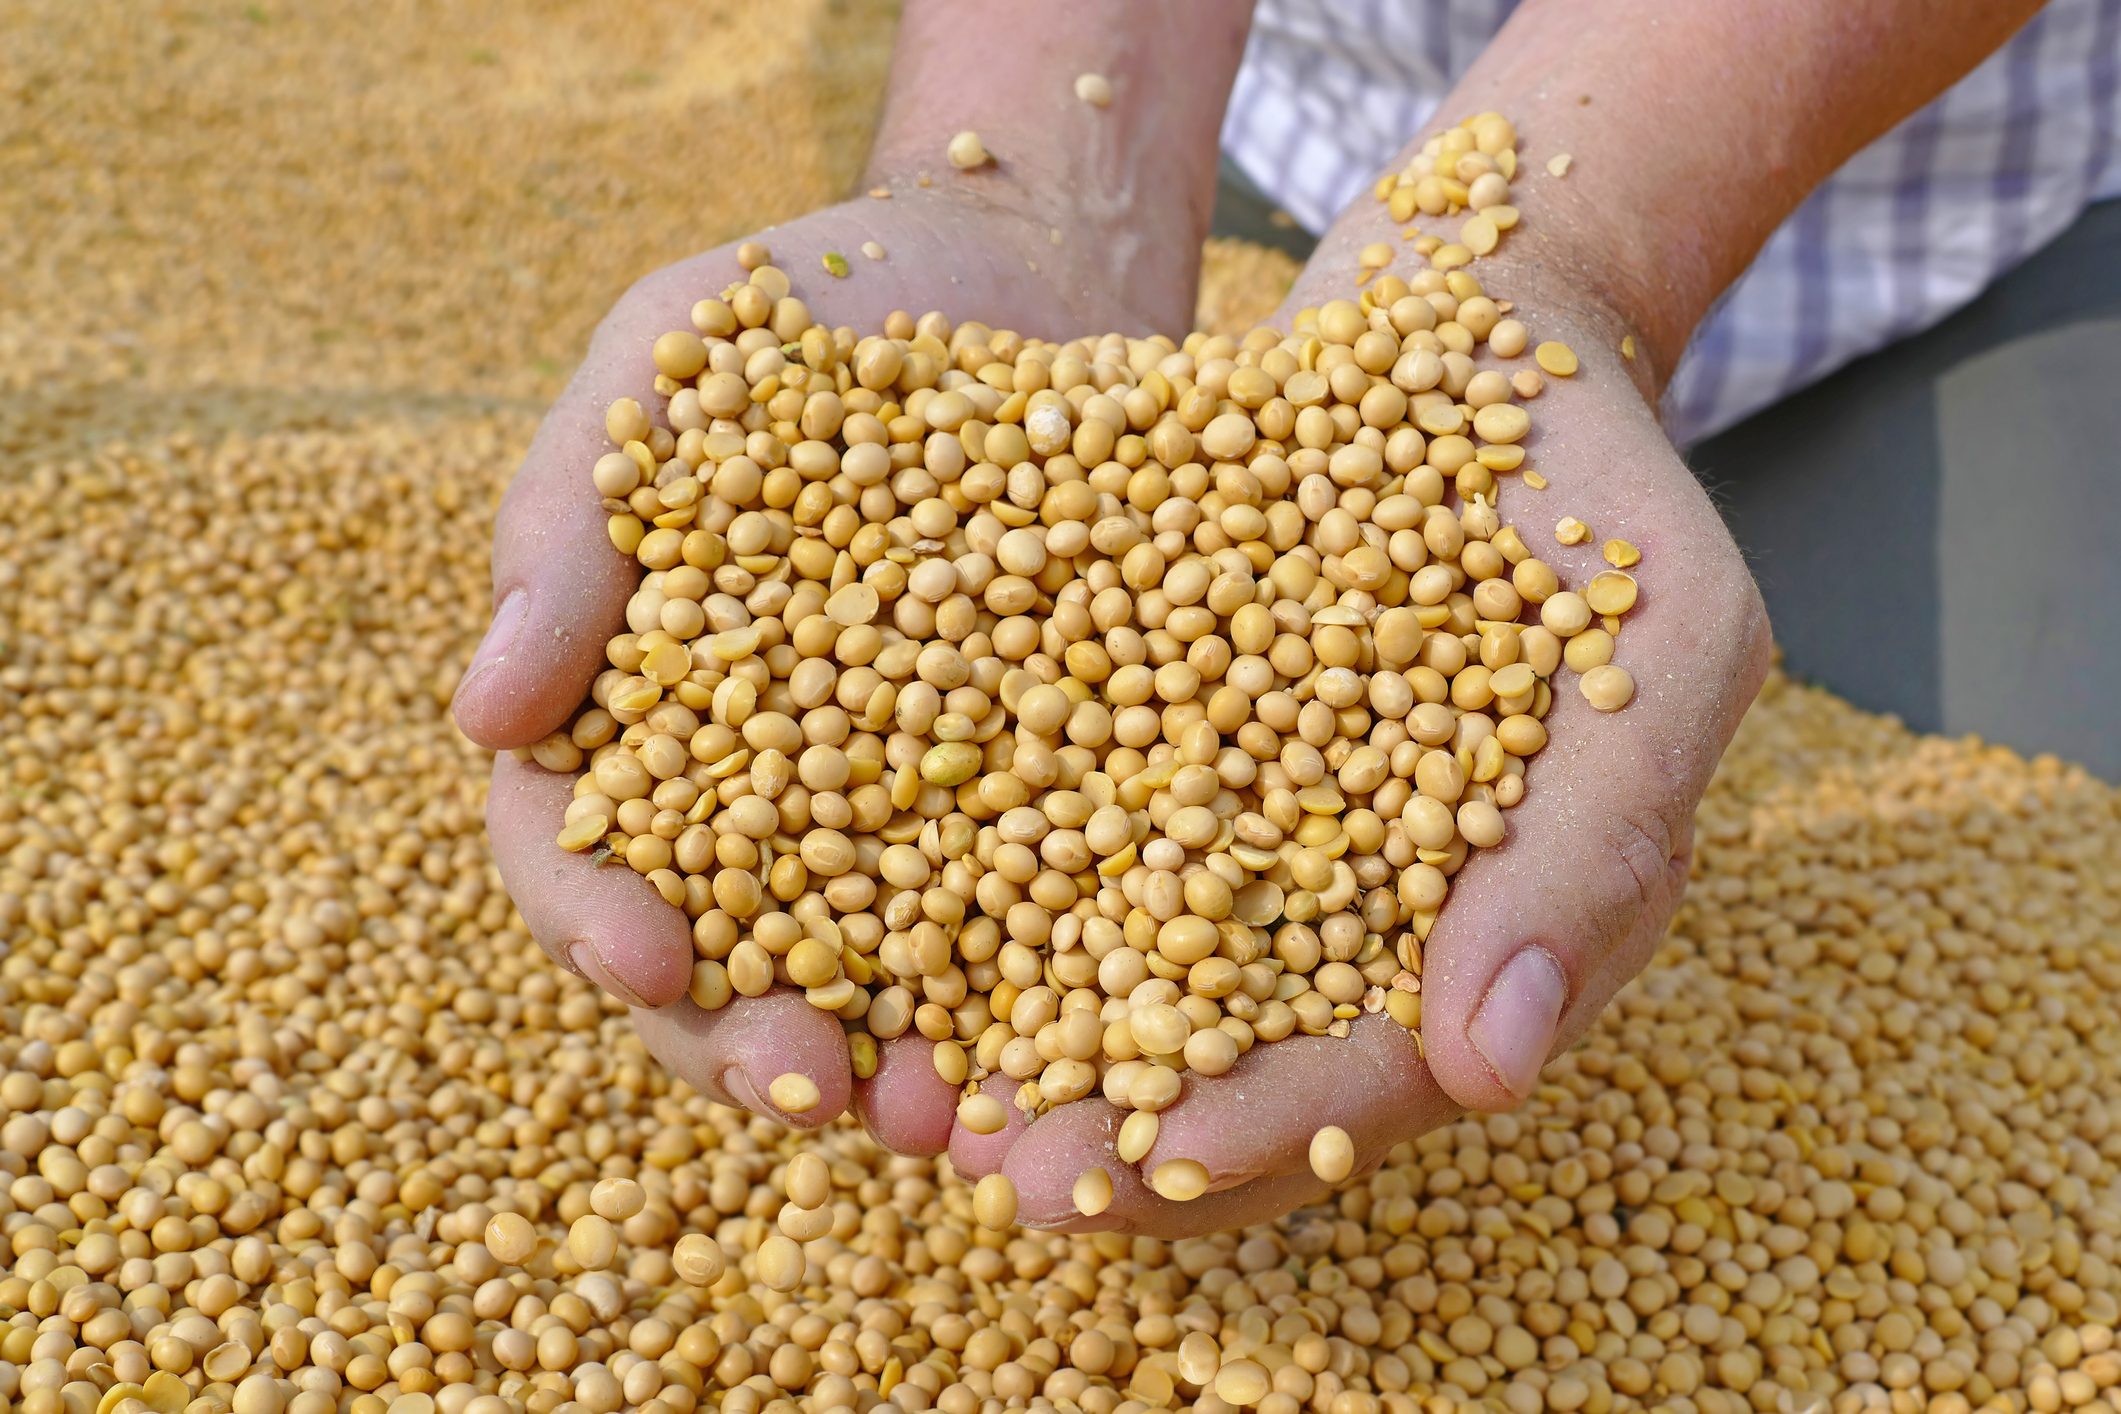 Урожай 2022 г.: кукуруза, пшеница, рапс, соя, подсолнечник, картофель. Комбикорм - в наличии и под заказ